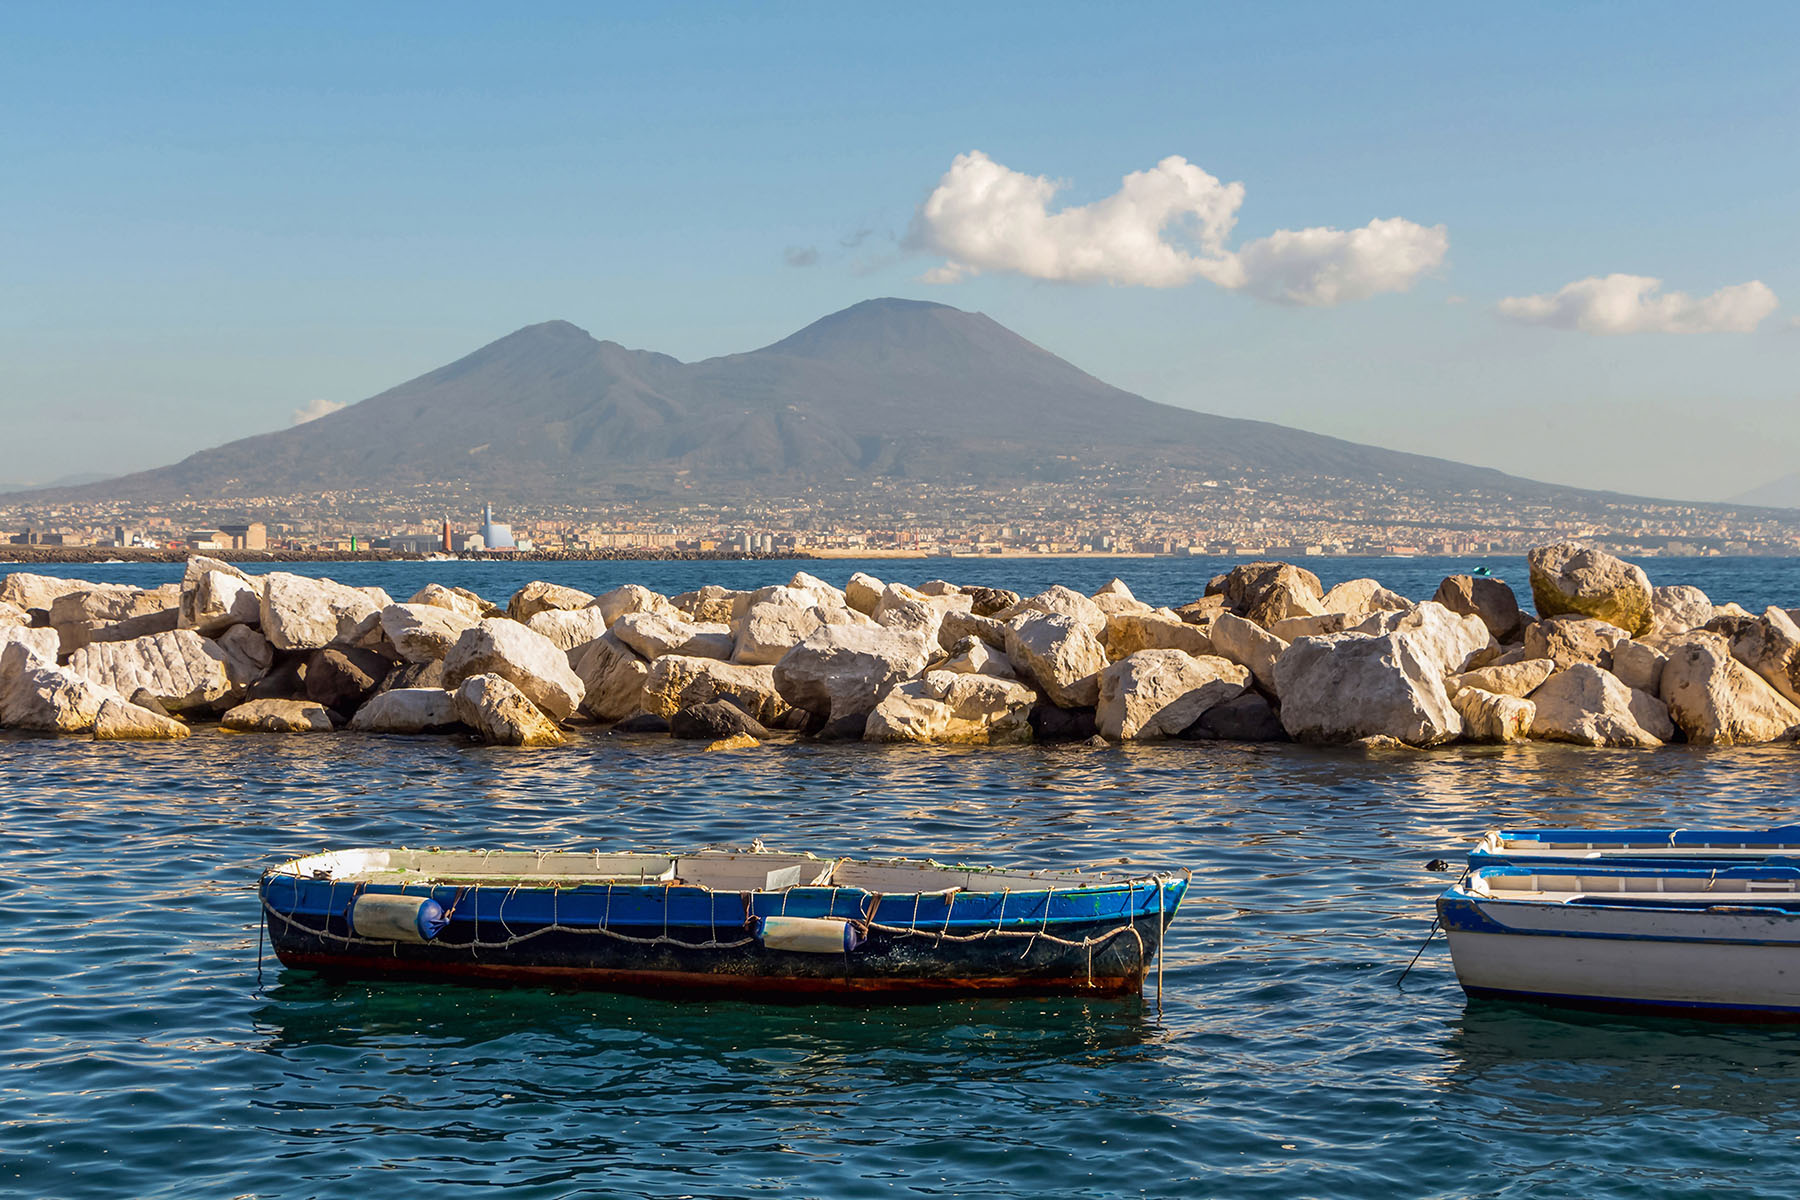 CNN Travel annovera Napoli tra le migliori mete del 2022